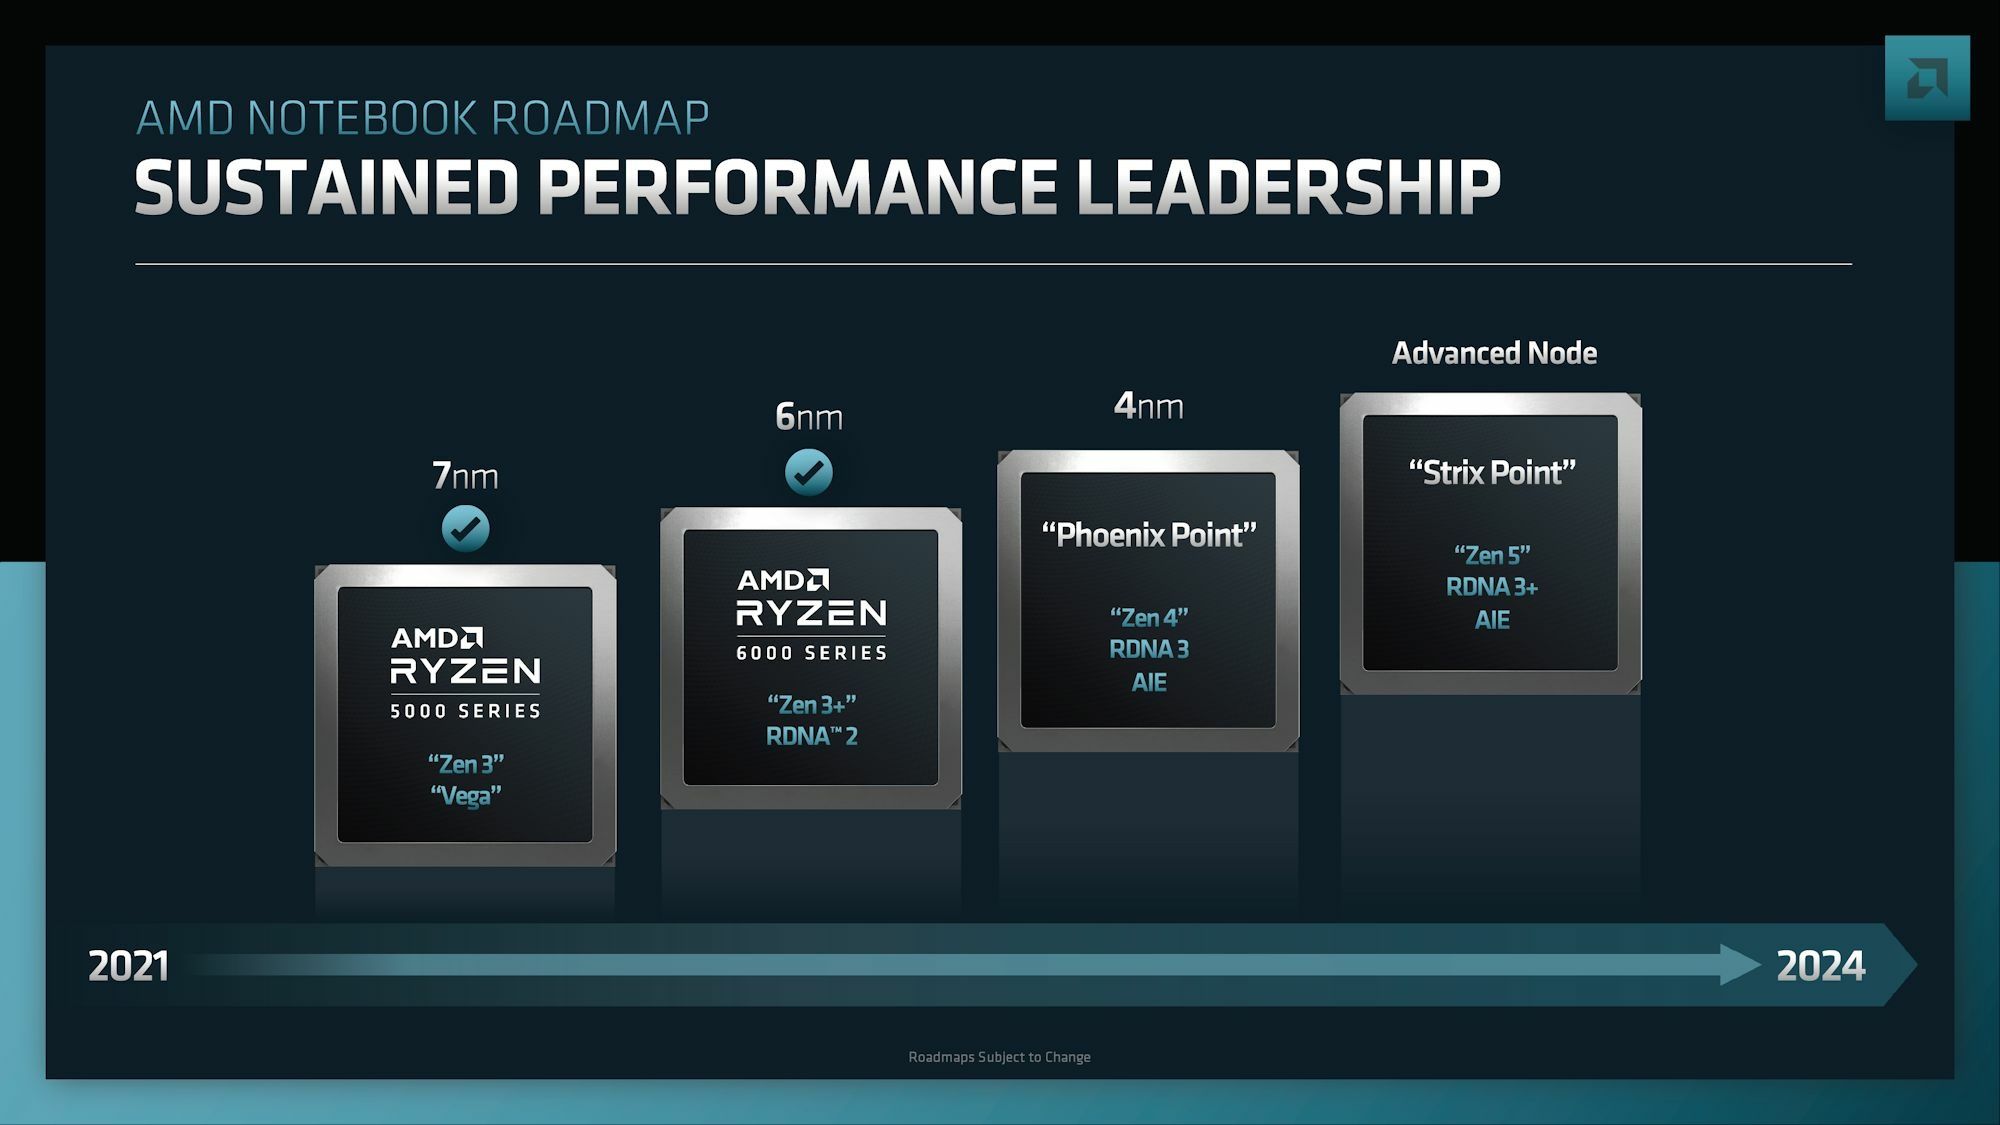 AMD APU roadmap